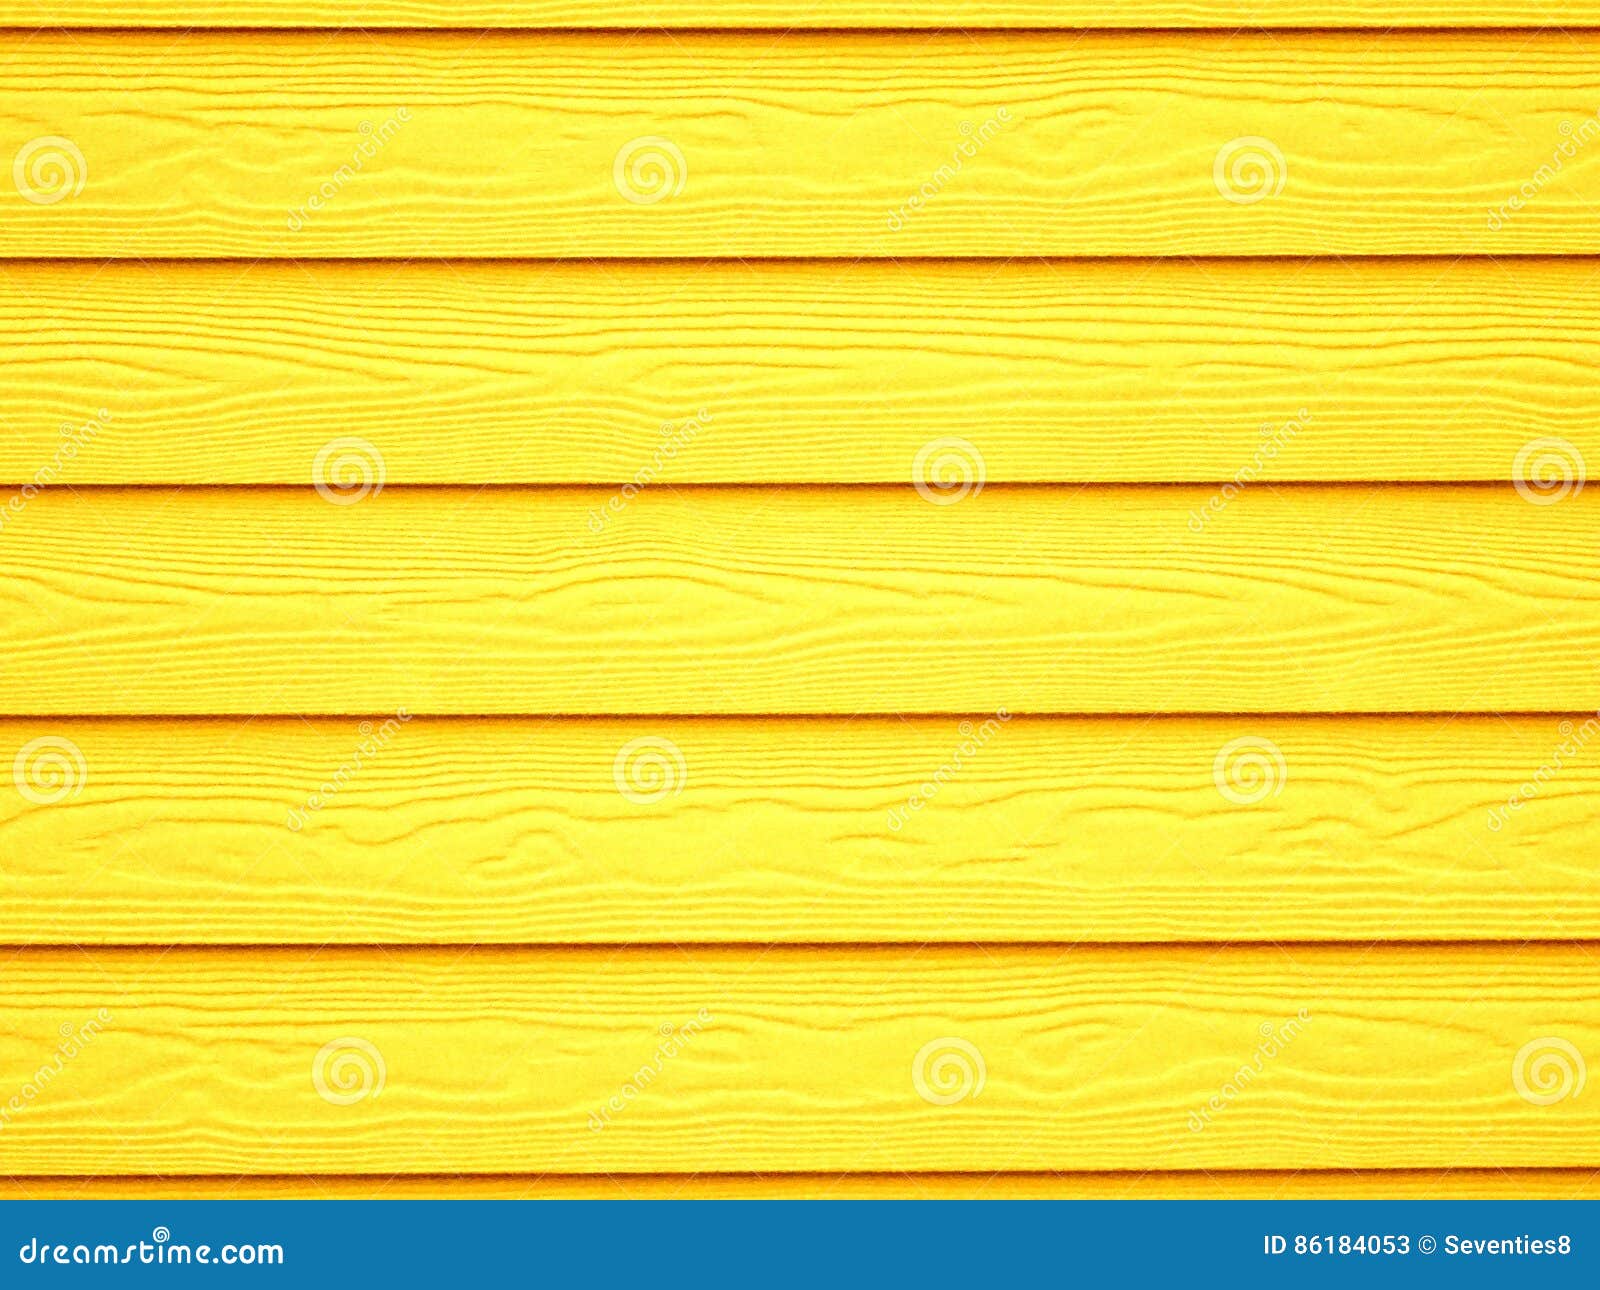 Hình nền vân gỗ màu vàng: Hãy chọn hình nền vân gỗ màu vàng để làm nổi bật màn hình của bạn và tạo sự ấm áp trong không gian làm việc hoặc phòng khách. Với khả năng tương phản và chất liệu sống động, hình nền vân gỗ màu vàng là lựa chọn tuyệt vời cho những ai yêu thích phong cách cổ điển và tối giản. Hãy xem hình ảnh để lựa chọn cho mình một chiếc hình nền phù hợp.